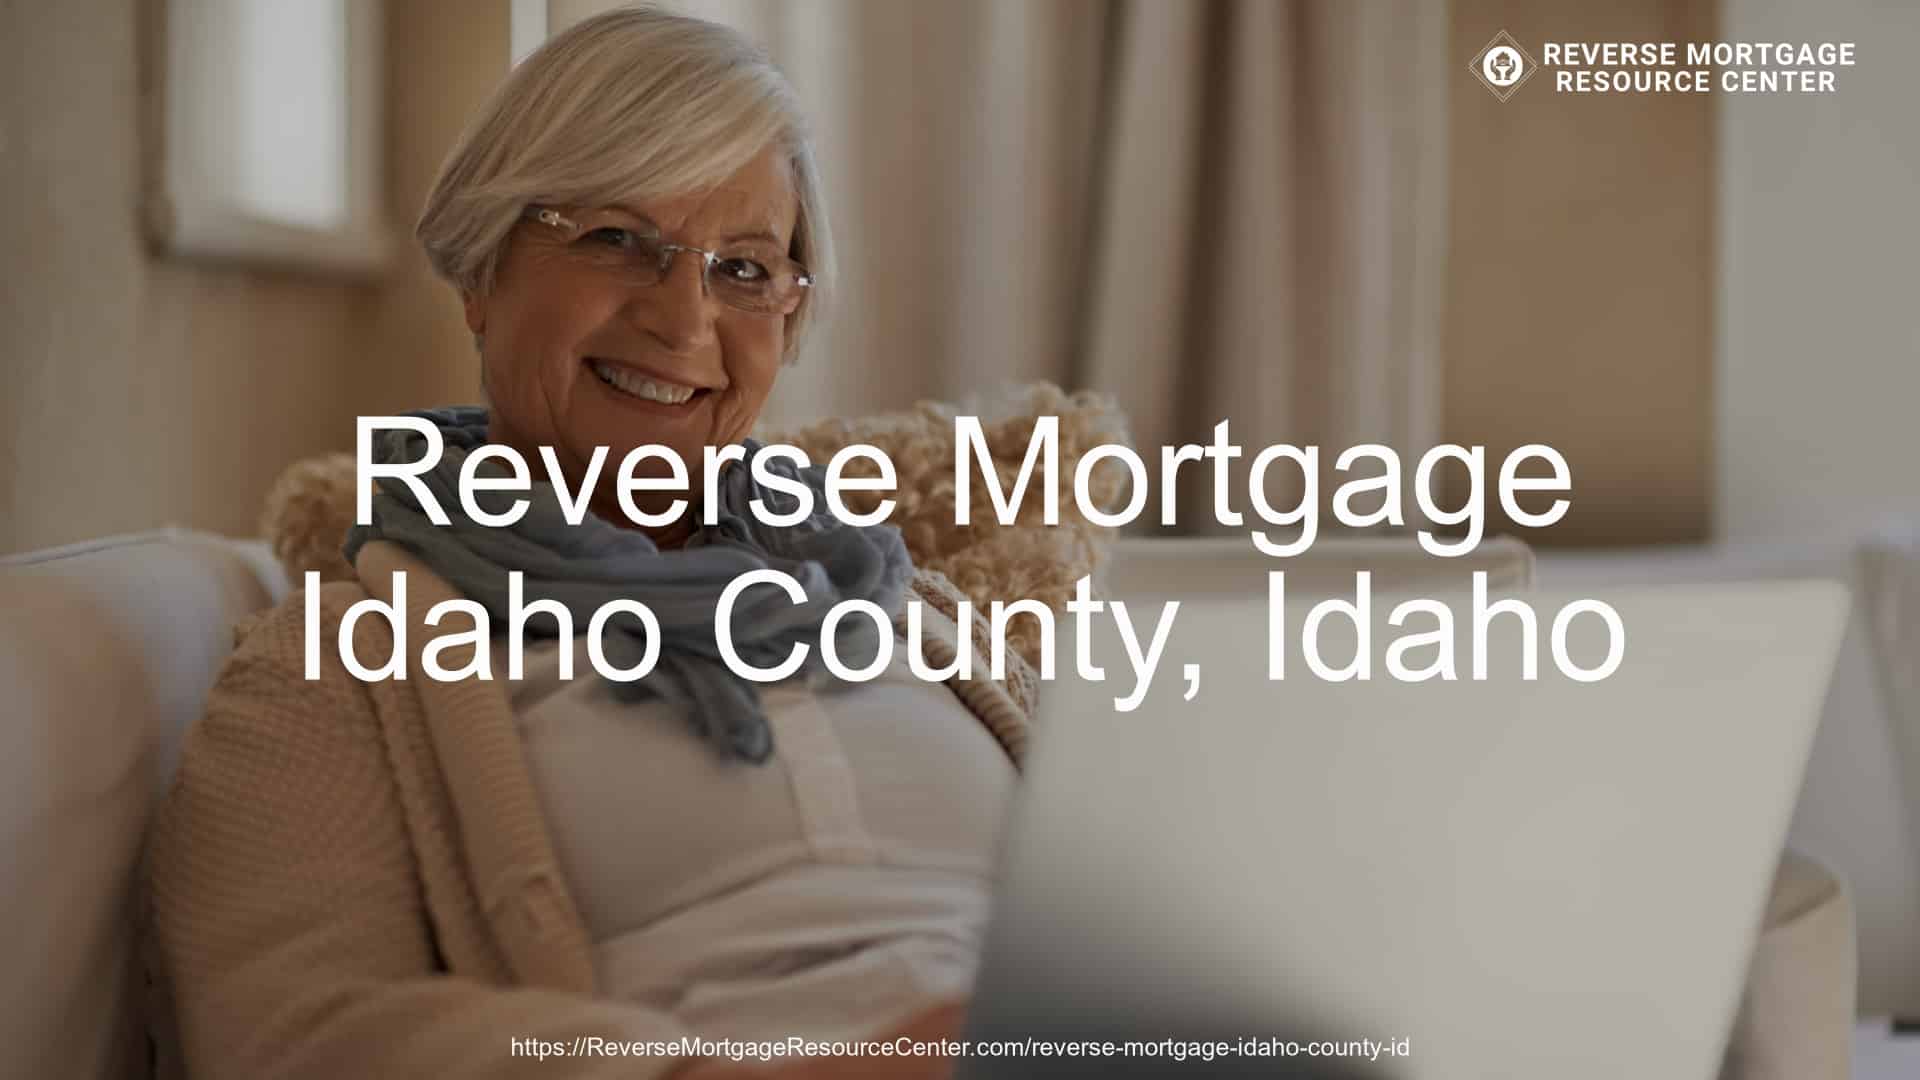 Reverse Mortgage Loans in Idaho County Idaho